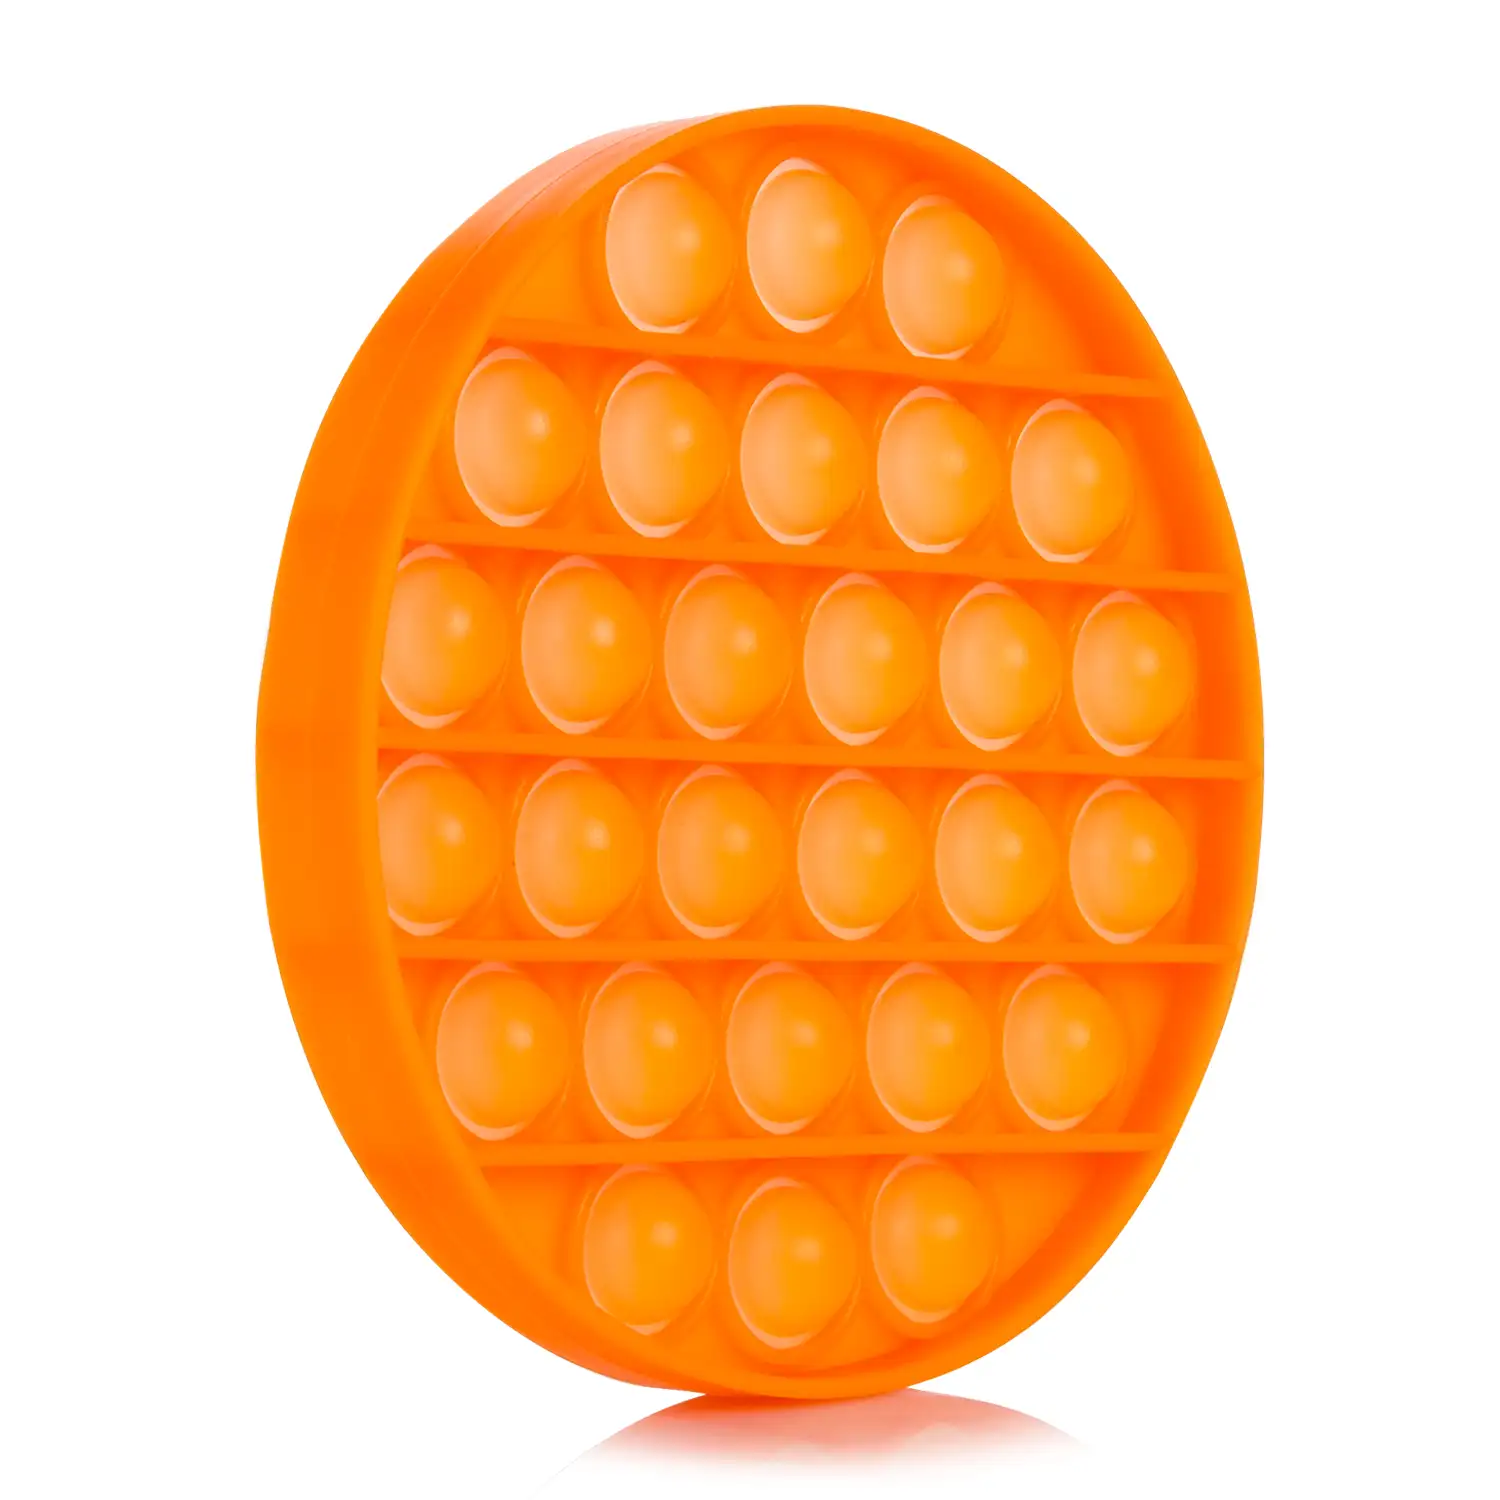 Bubble Pop It juguete sensitivo desestresante, burbujas de silicona para apretar y pulsar. Diseño redondo.